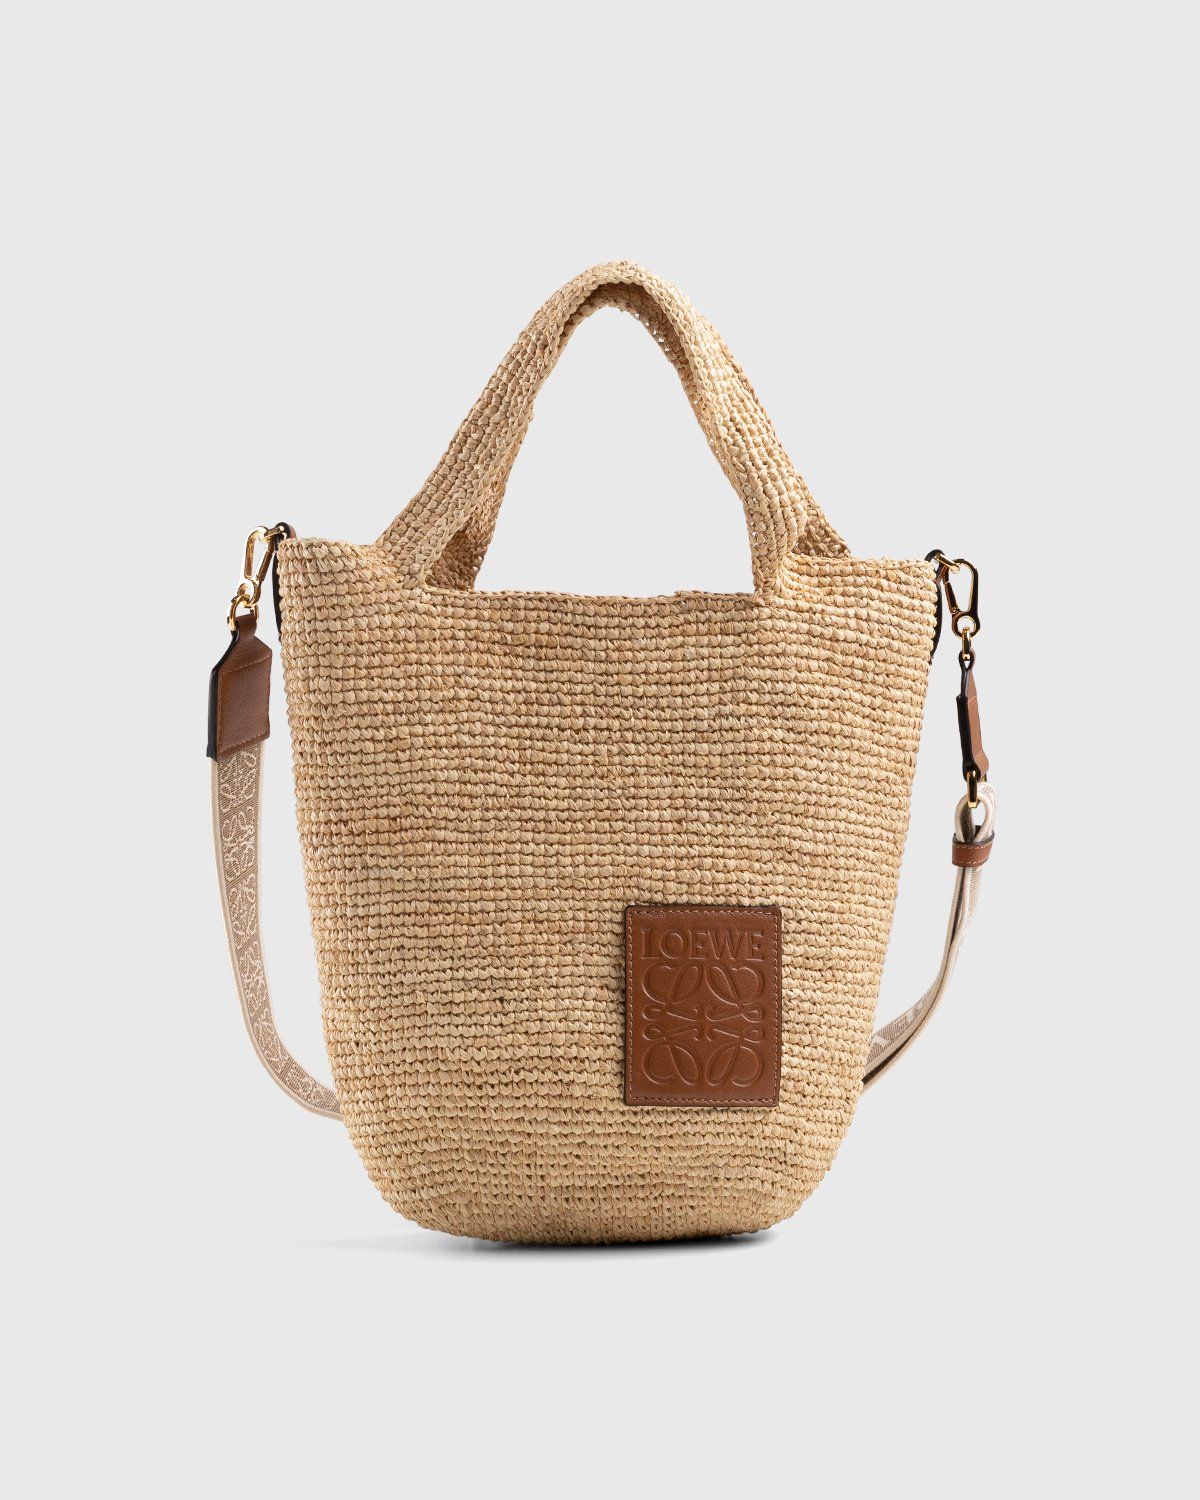 Loewe Large Basket Bag in Natural & Tan